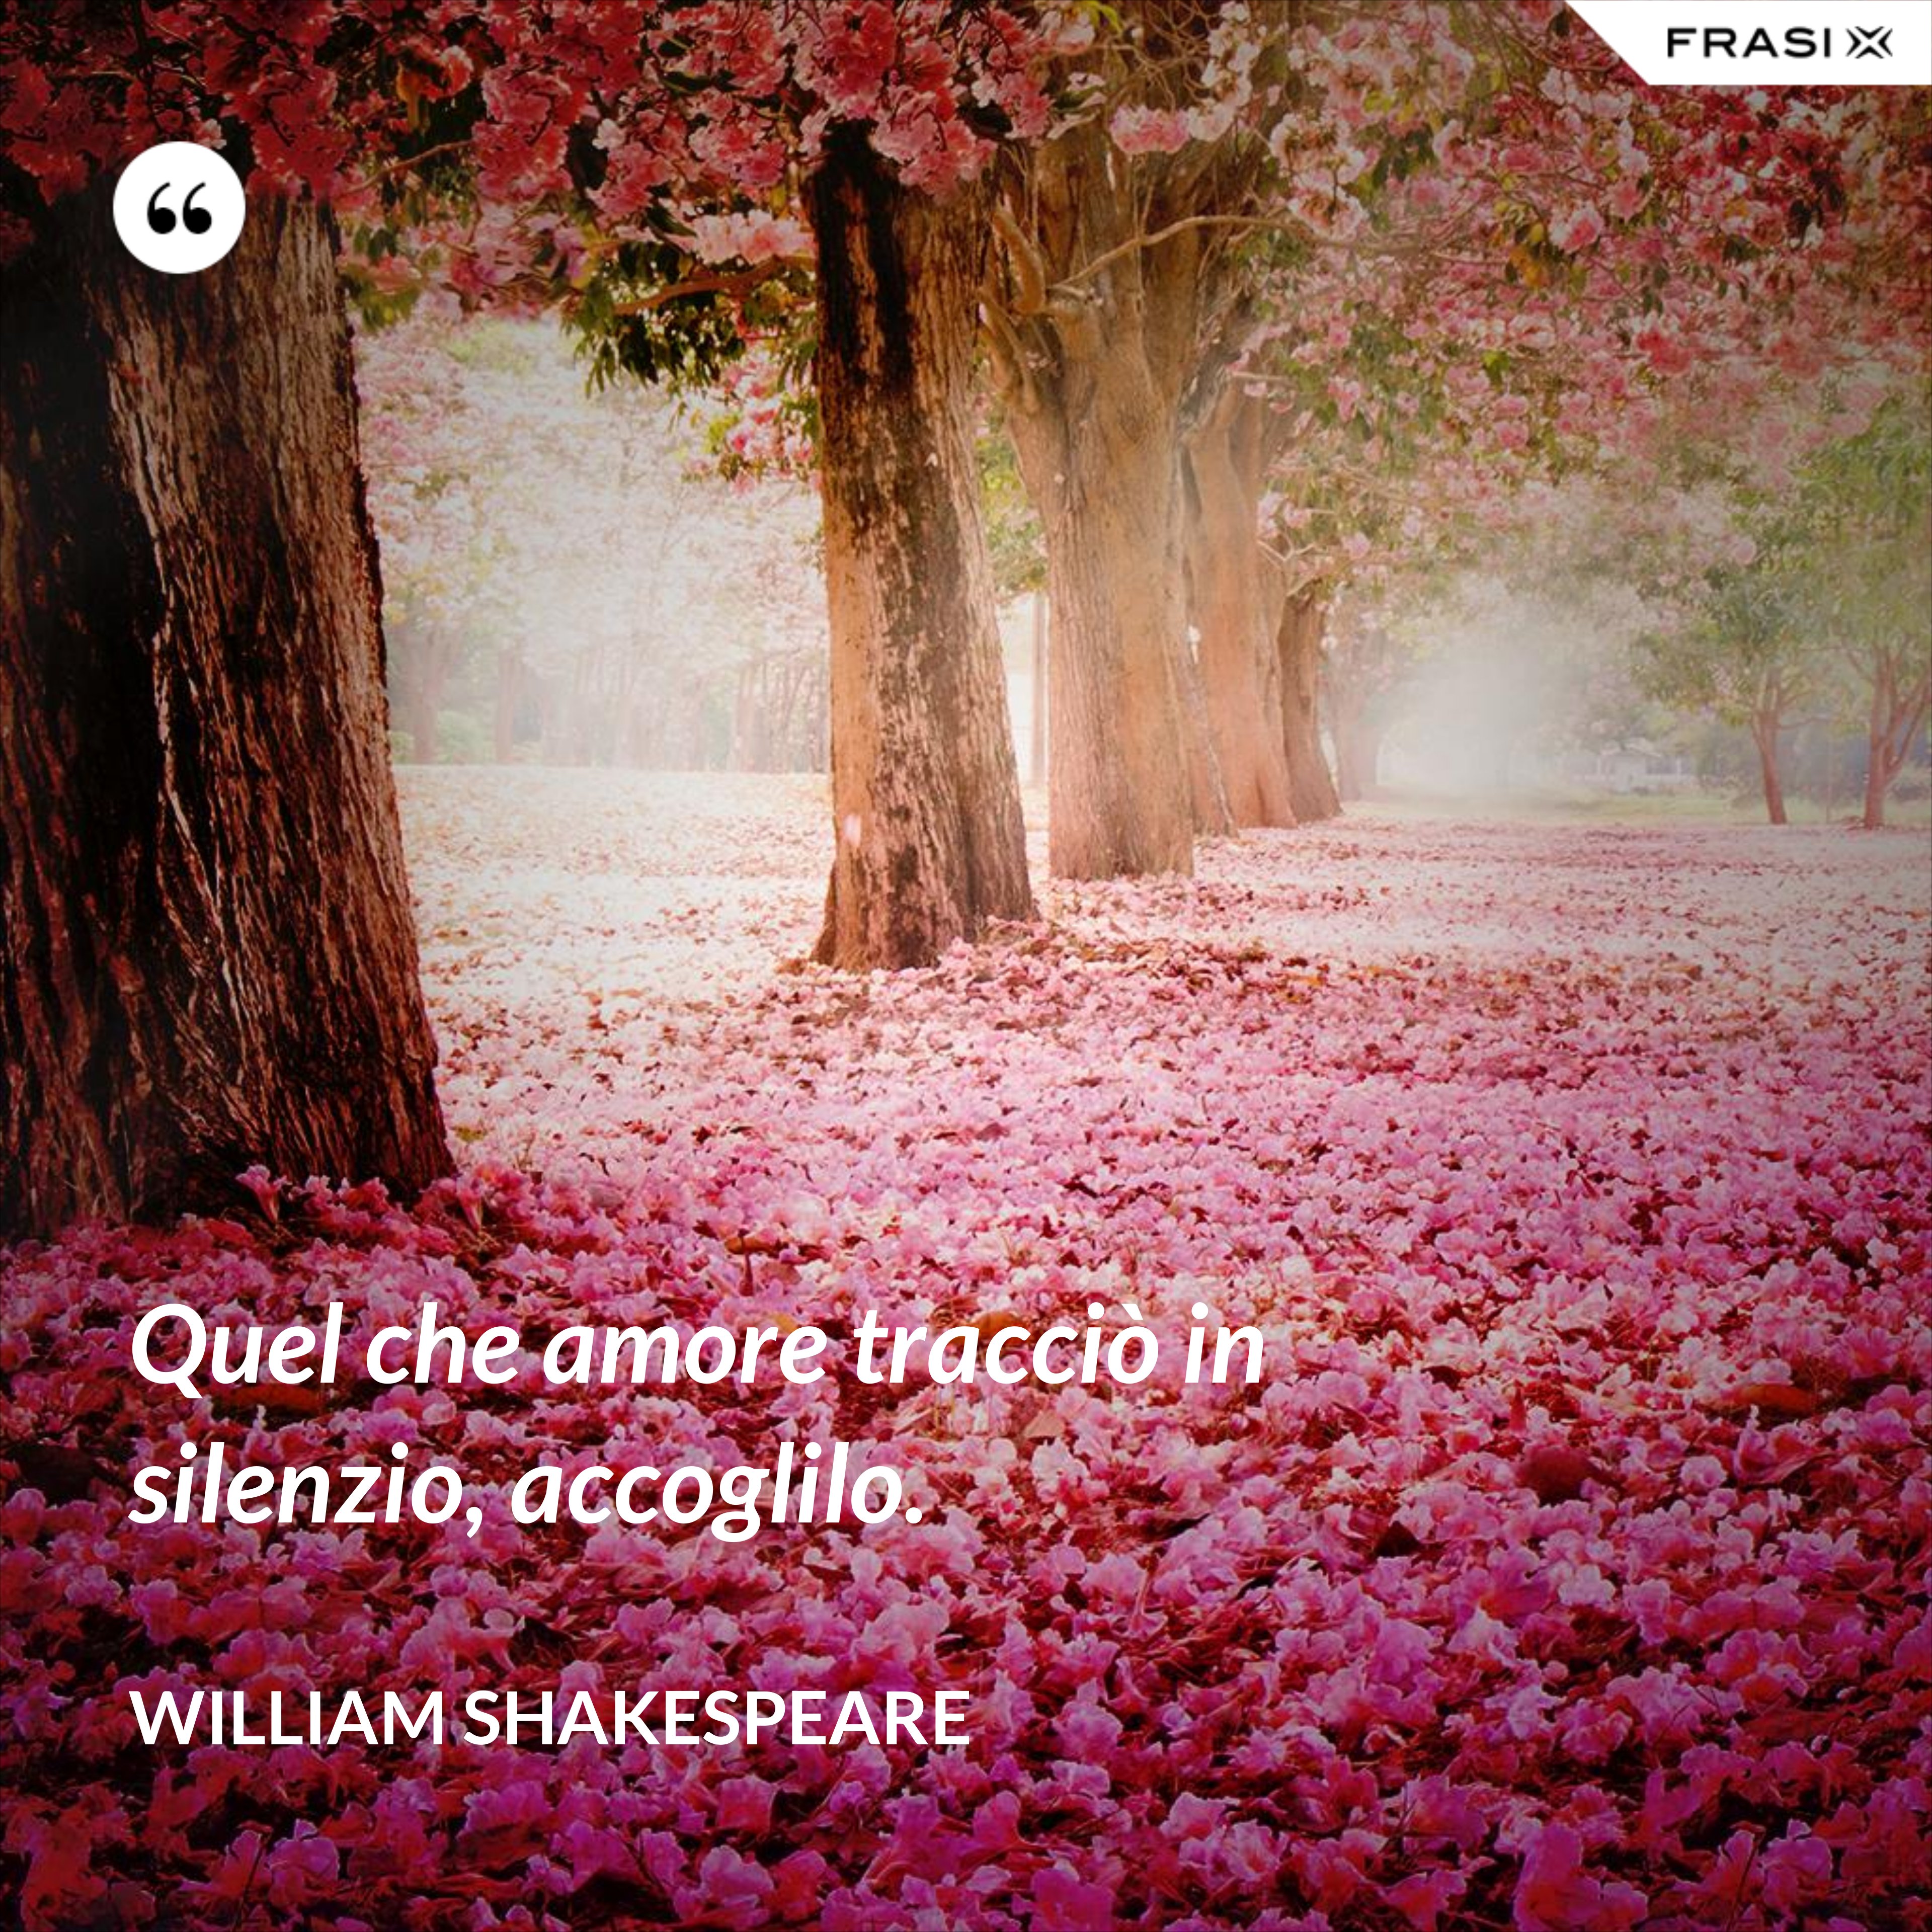 Quel che amore tracciò in silenzio, accoglilo. - William Shakespeare